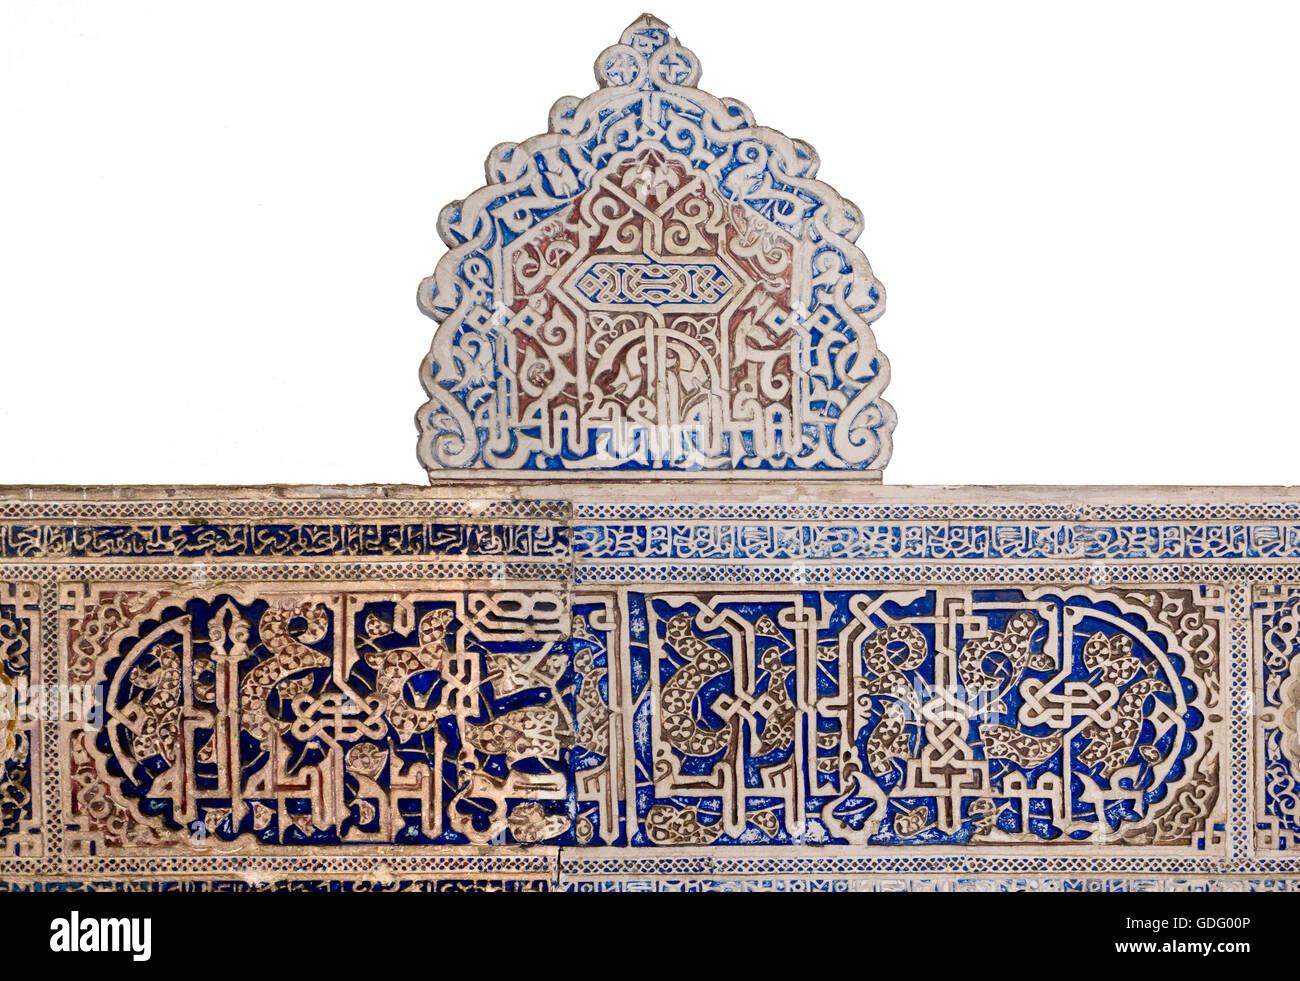 Détail de la perfection mudéjar dans la combinaison de motifs végétaux et d'inscriptions arabes, de l'Alcazar de Séville, Espagne Banque D'Images